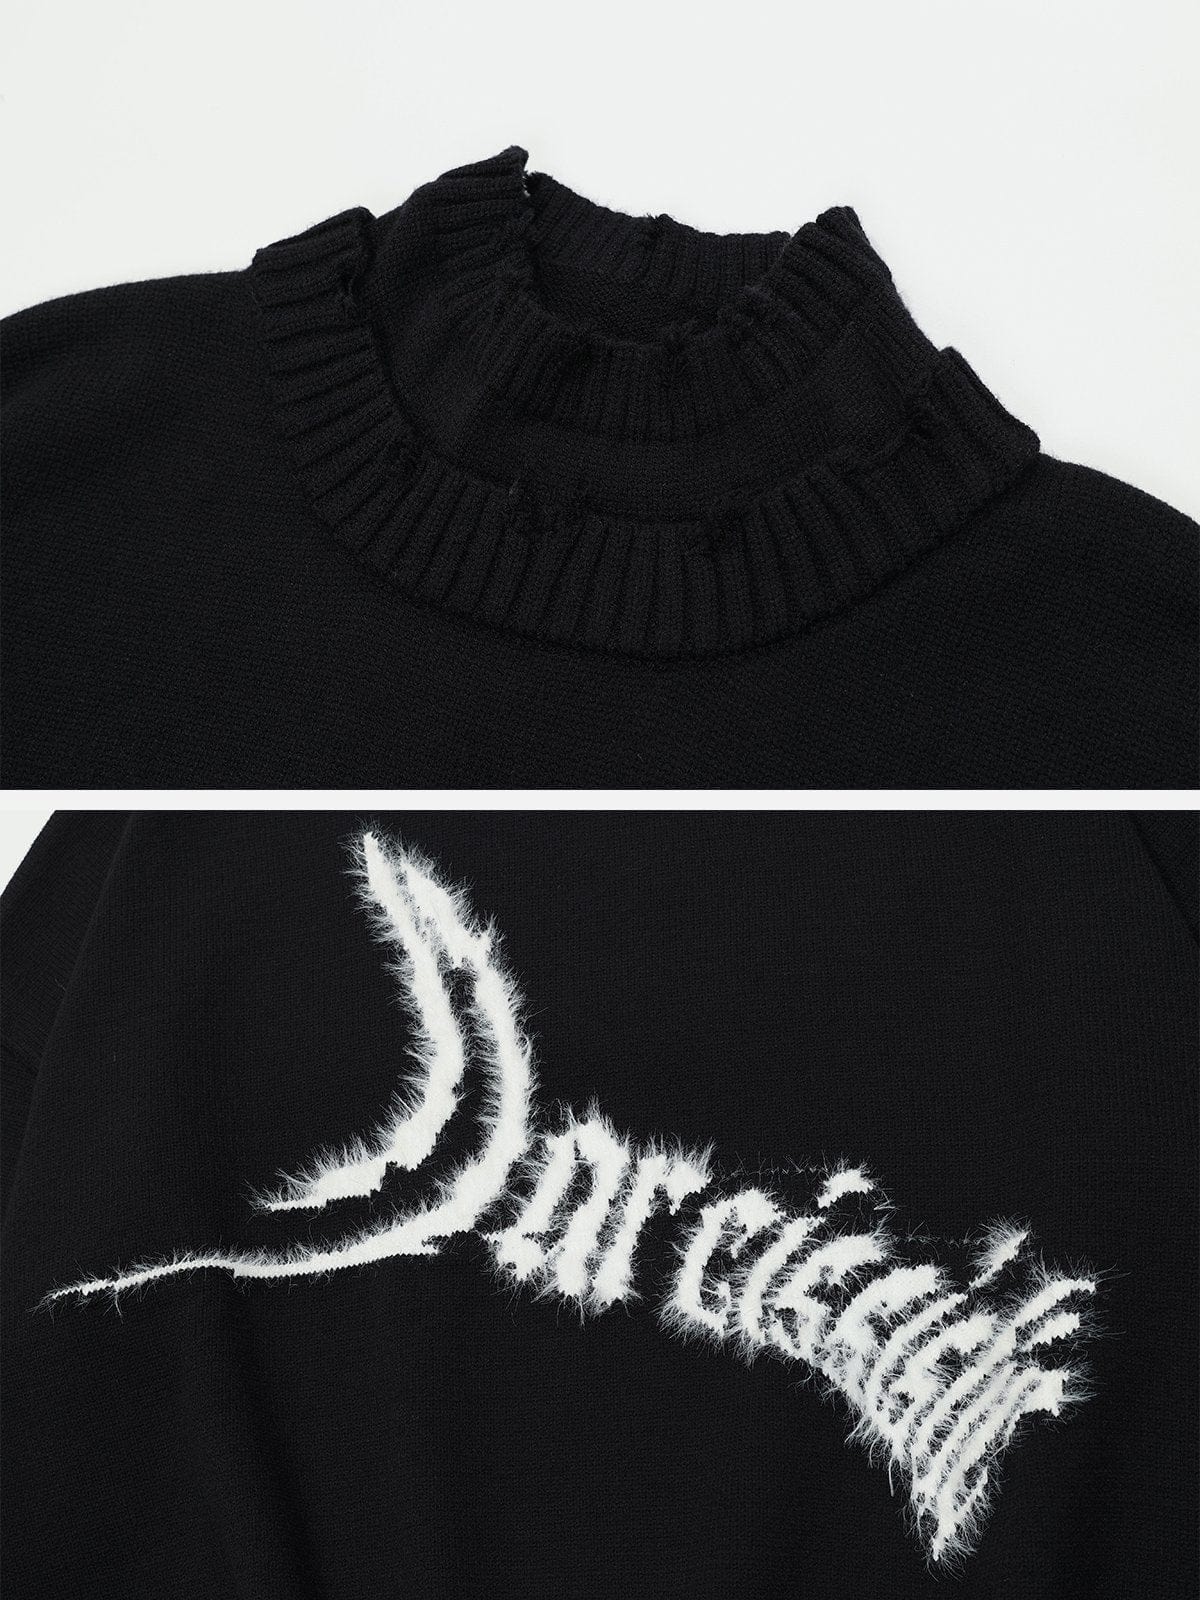 NEV Jacquard Fringe Sweater